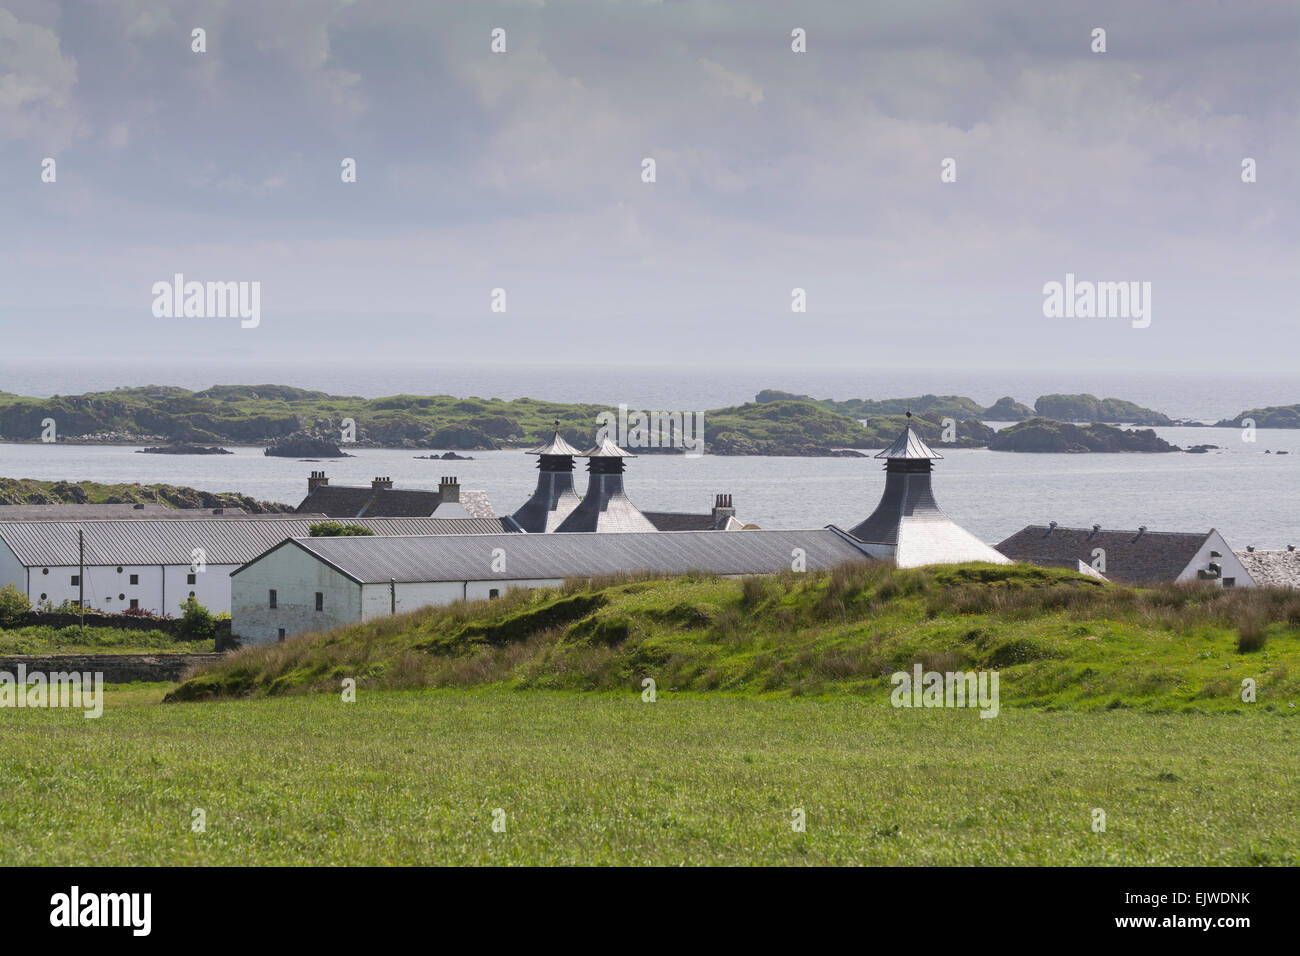 La distilleria ardbeg Isle of Islay Foto Stock